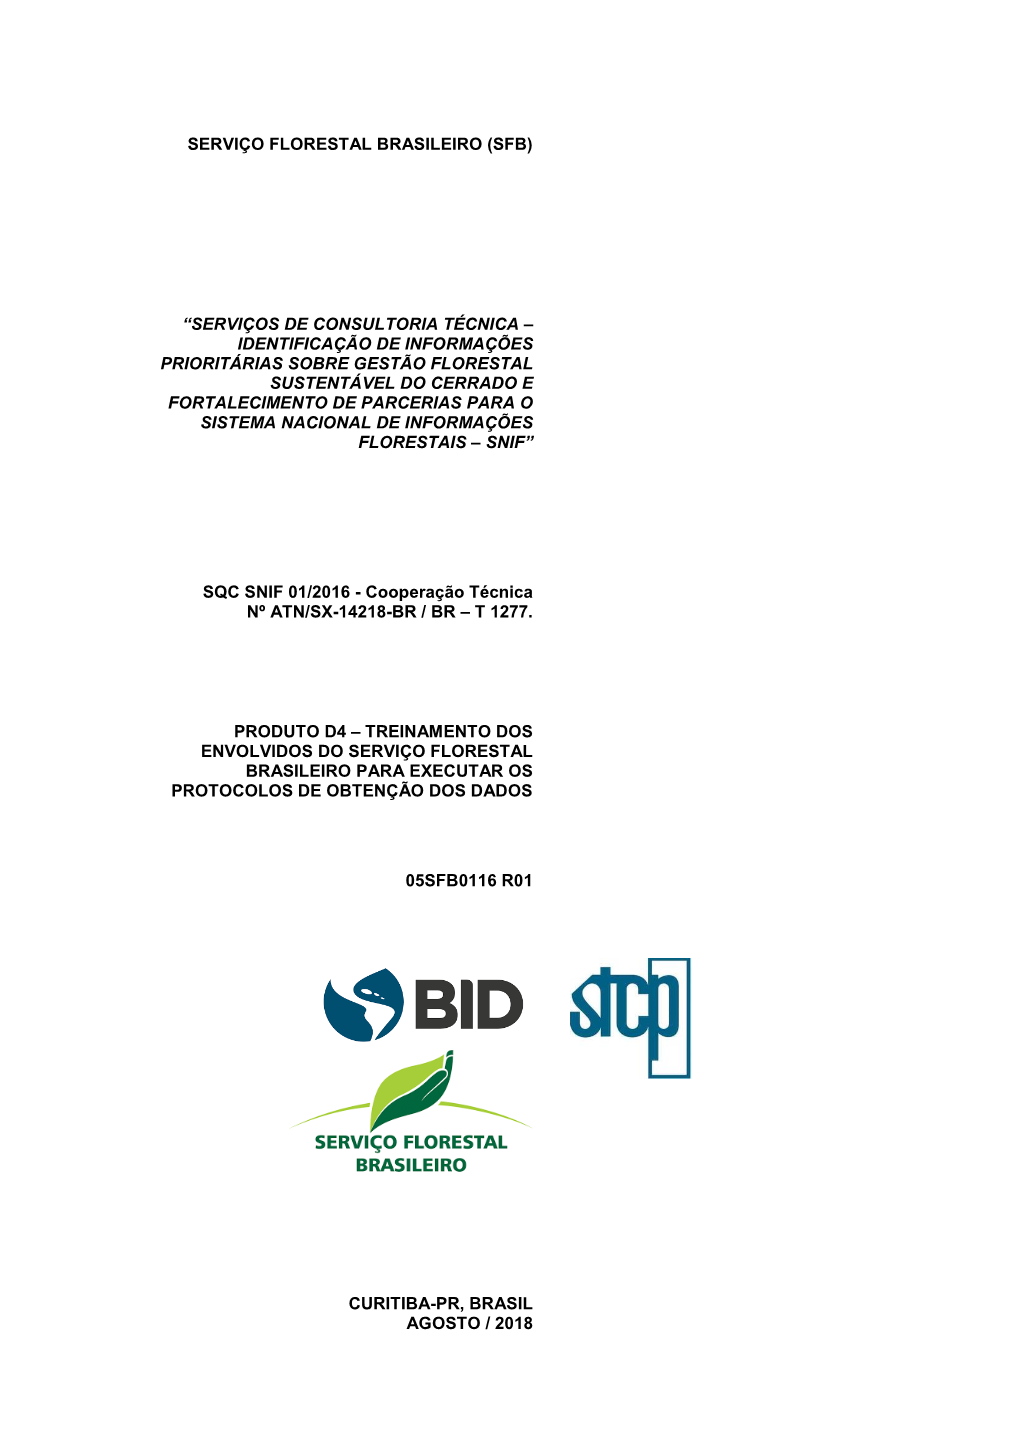 D4 – Treinamento Dos Envolvidos Do Serviço Florestal Brasileiro Para Executar Os Protocolos De Obtenção Dos Dados